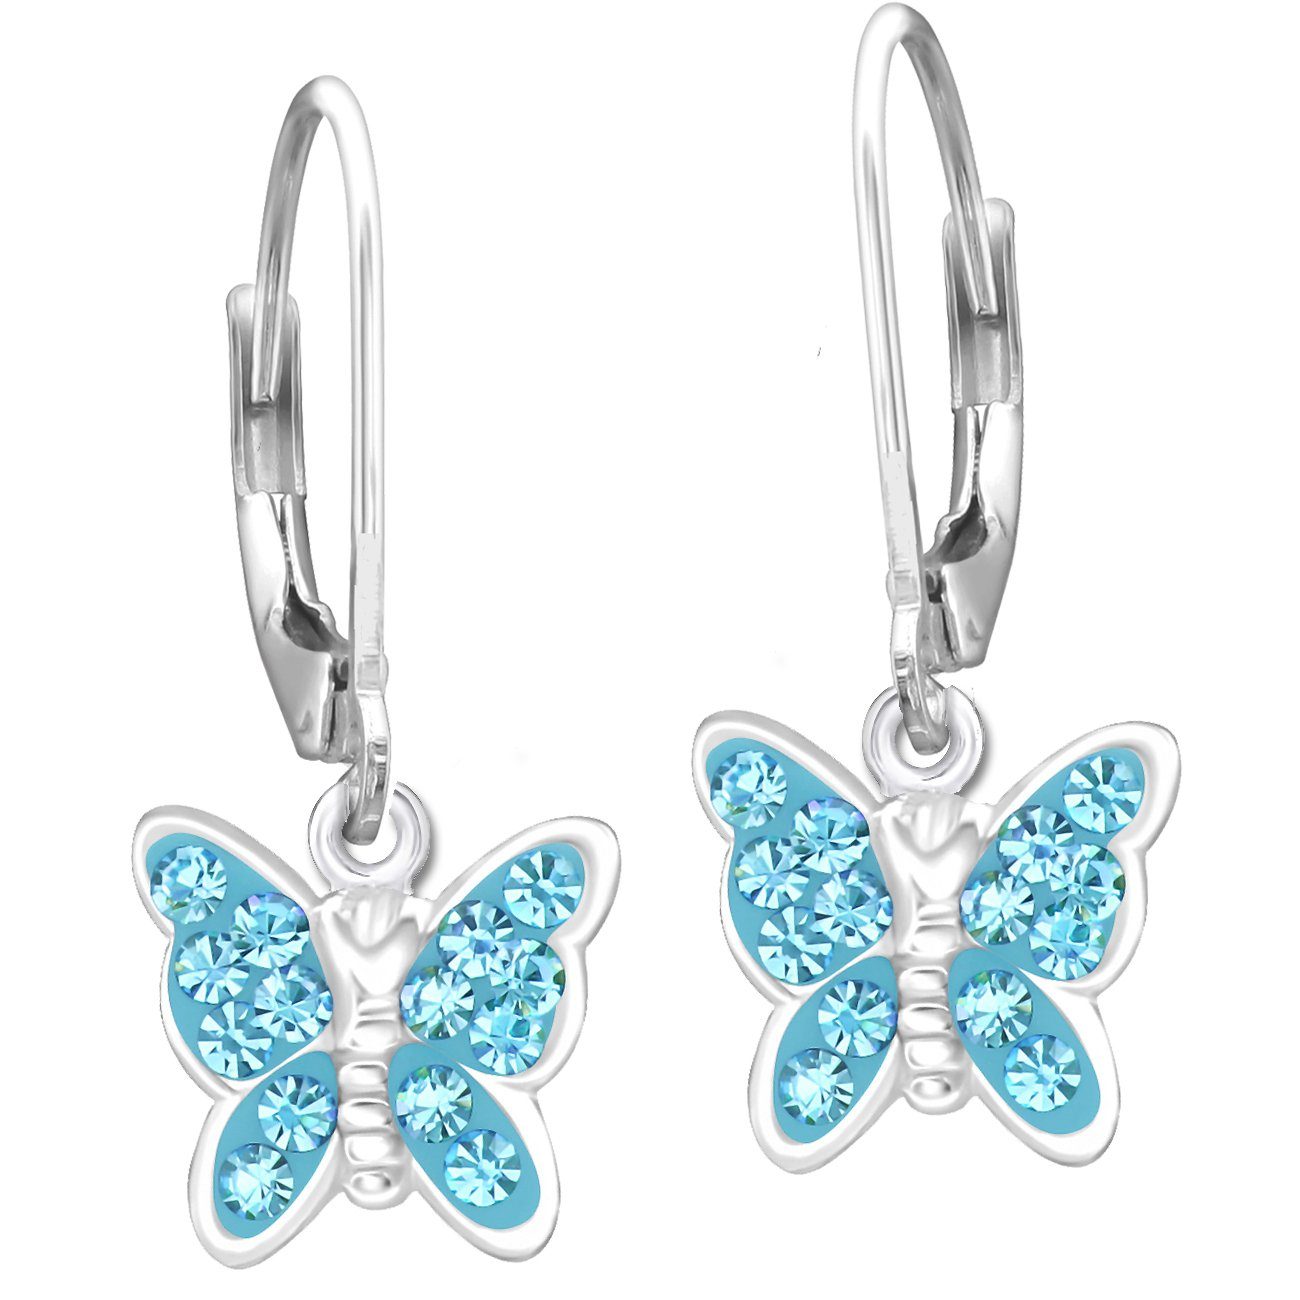 Limana Paar Ohrhänger Mädchen Kinder hängende Ohrringe echt 925 Sterling Silber Schmetterling K659o türkis